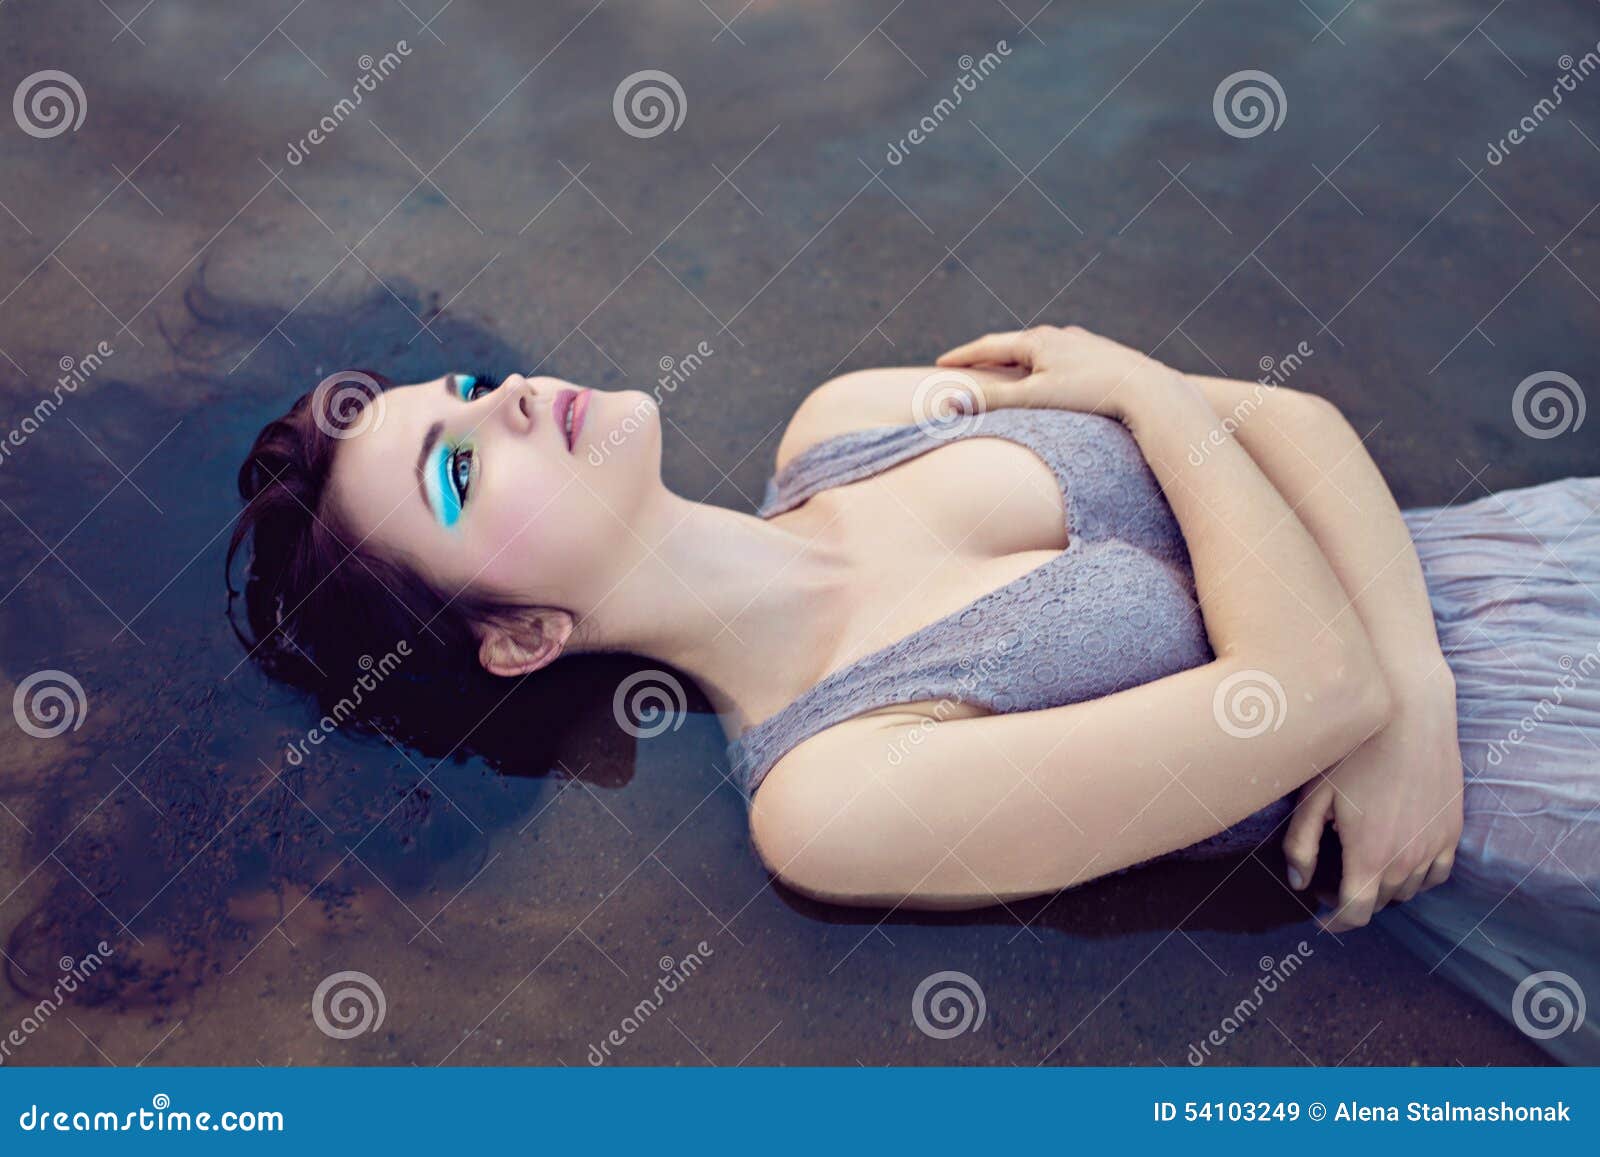 Junge schöne ertrunkene Frau, die im Wasser liegt. Junge schöne ertrunkene Frau im grauen Kleid, das im Wasser liegt